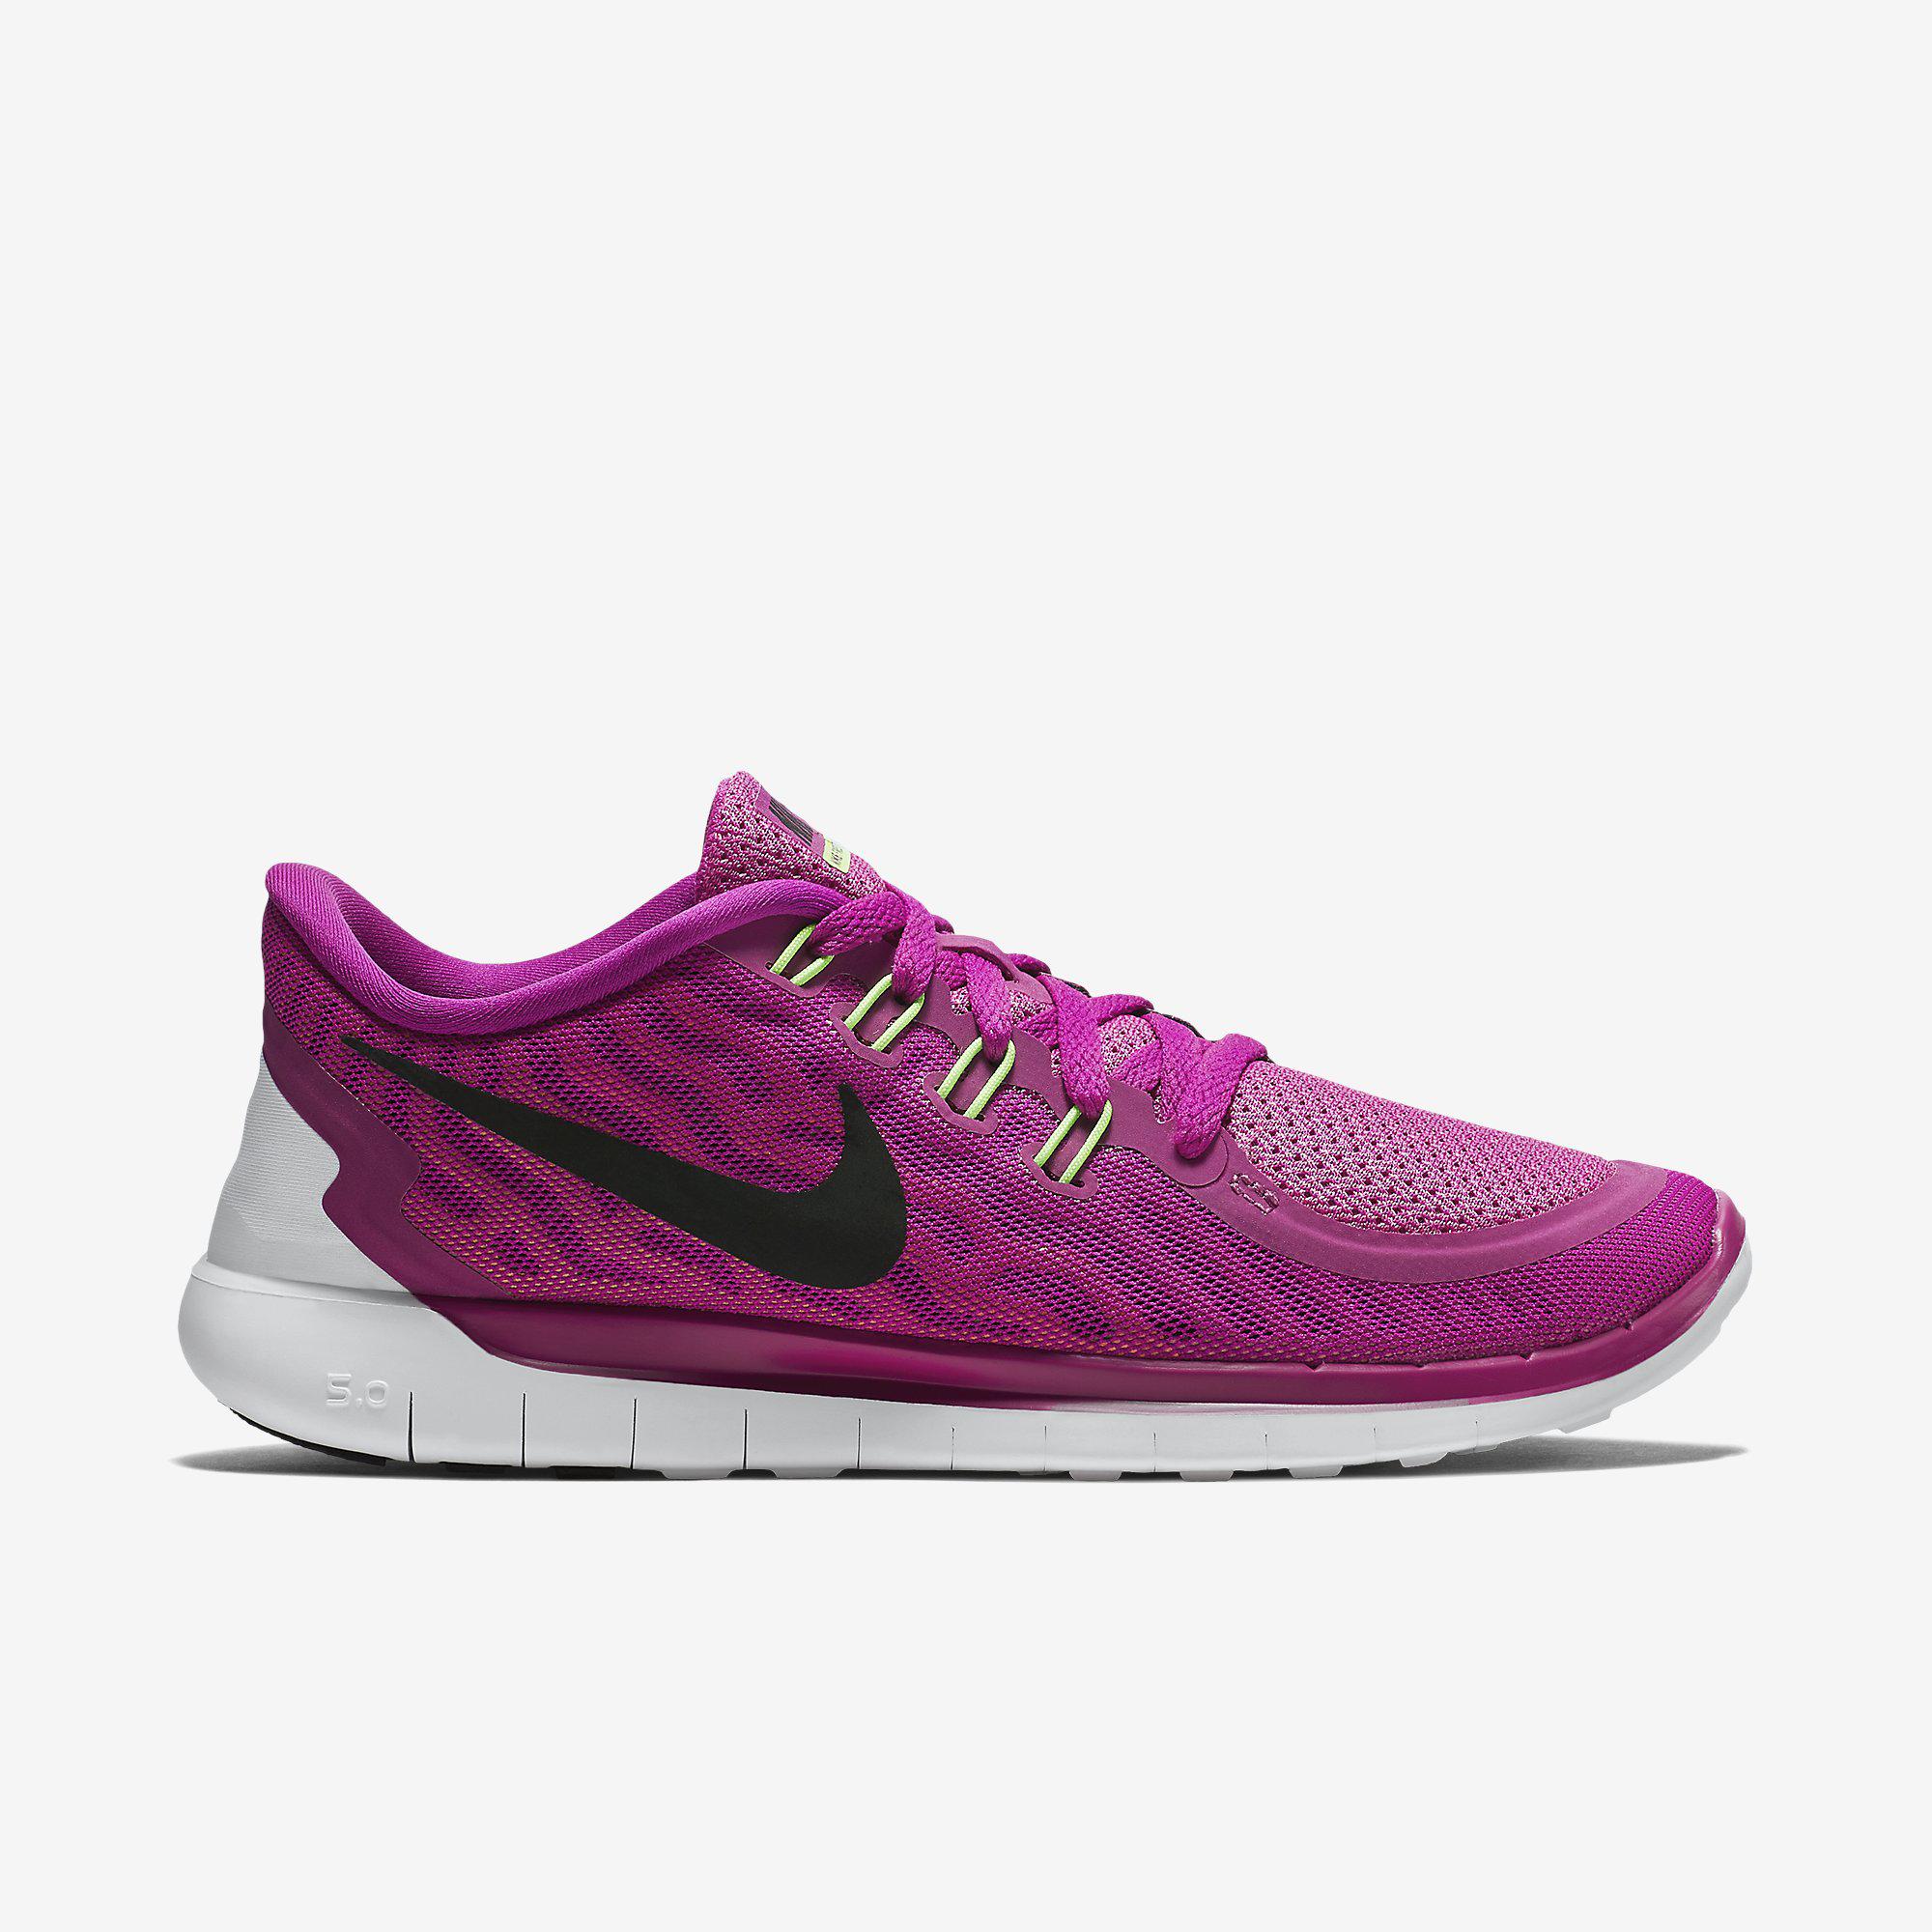 Nike Womens Shoes - Fuchsia Flash/Pink Pow Tennisnuts.com